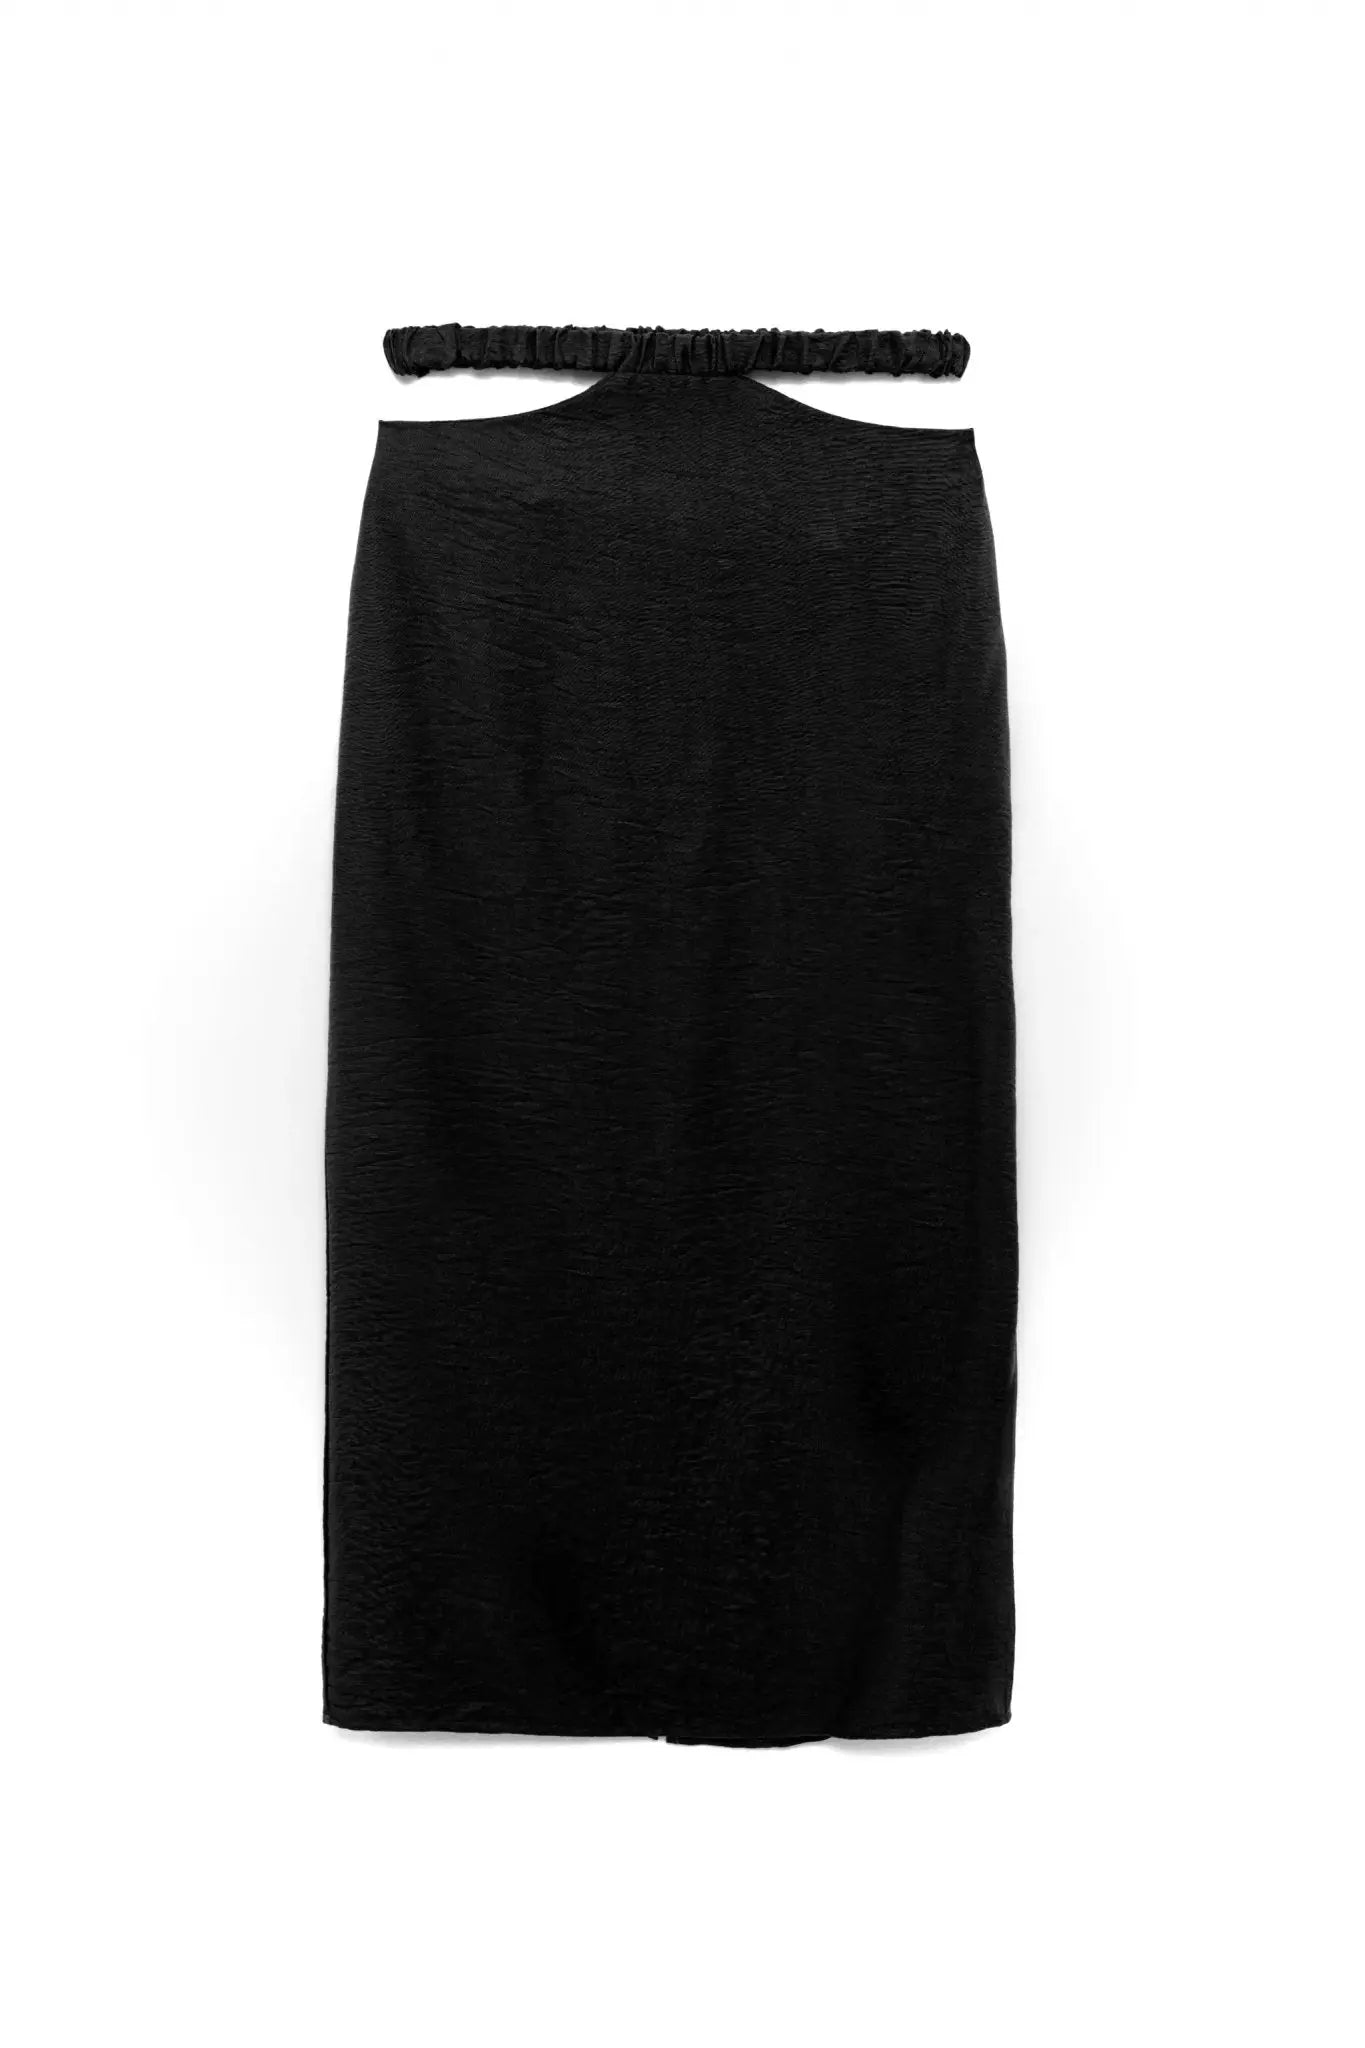 Cleo Midi Skirt and Top Set in Black - Akalia